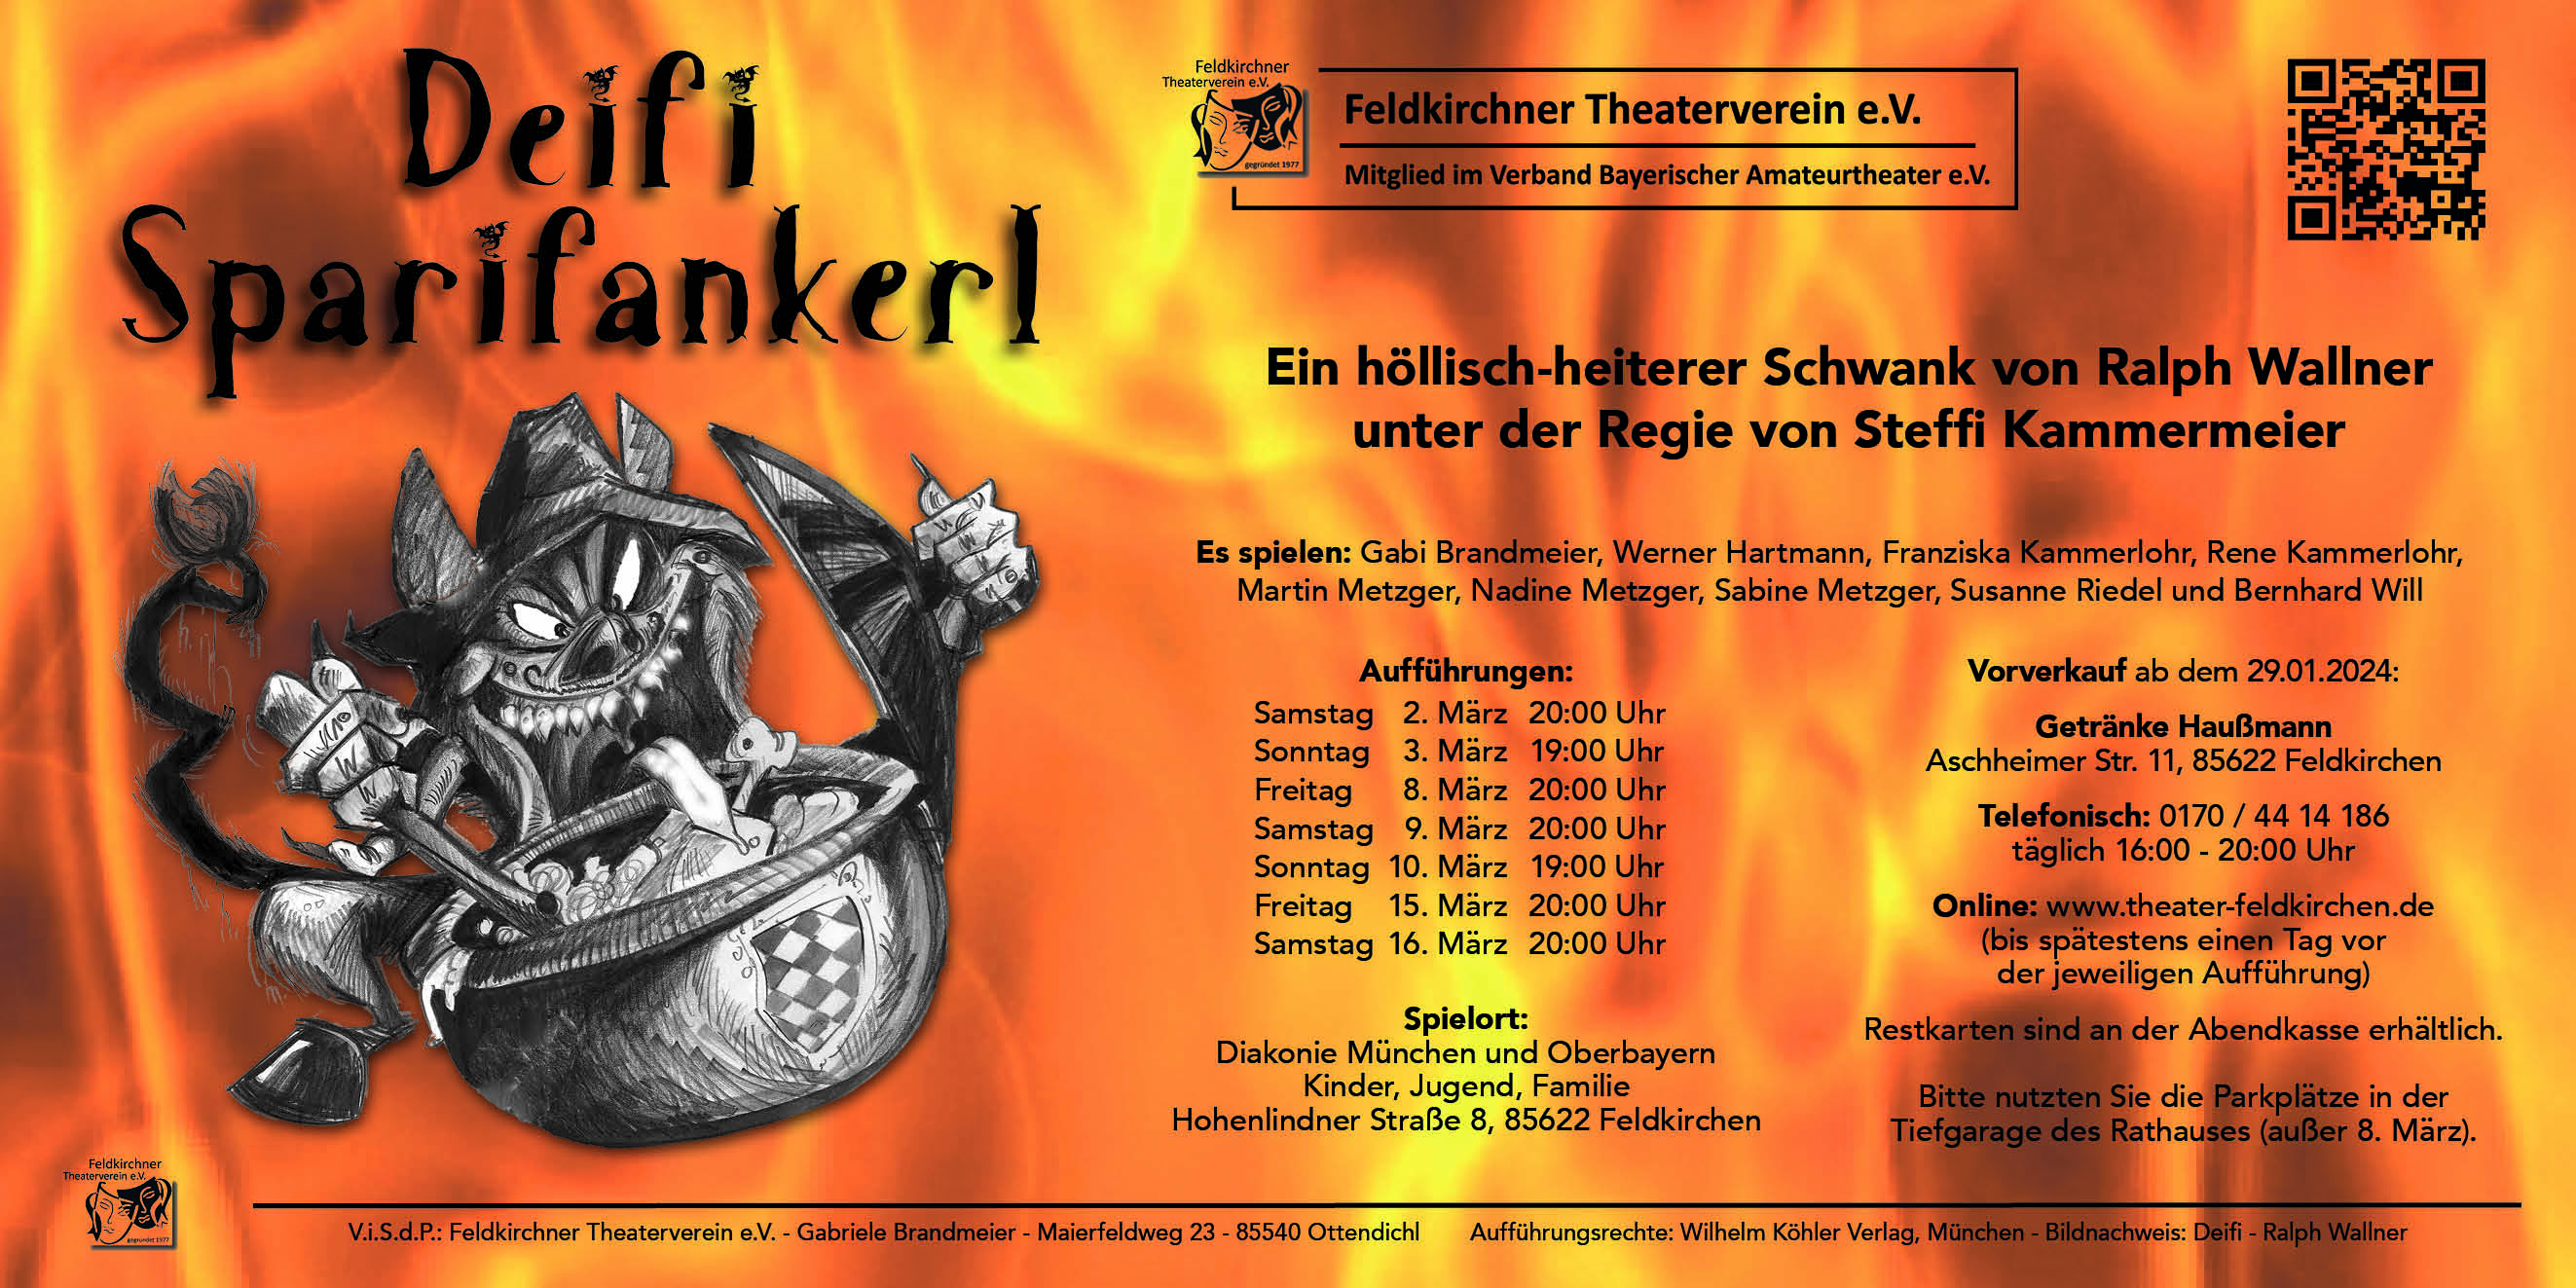 Feldkirchner Theaterverein e.V.